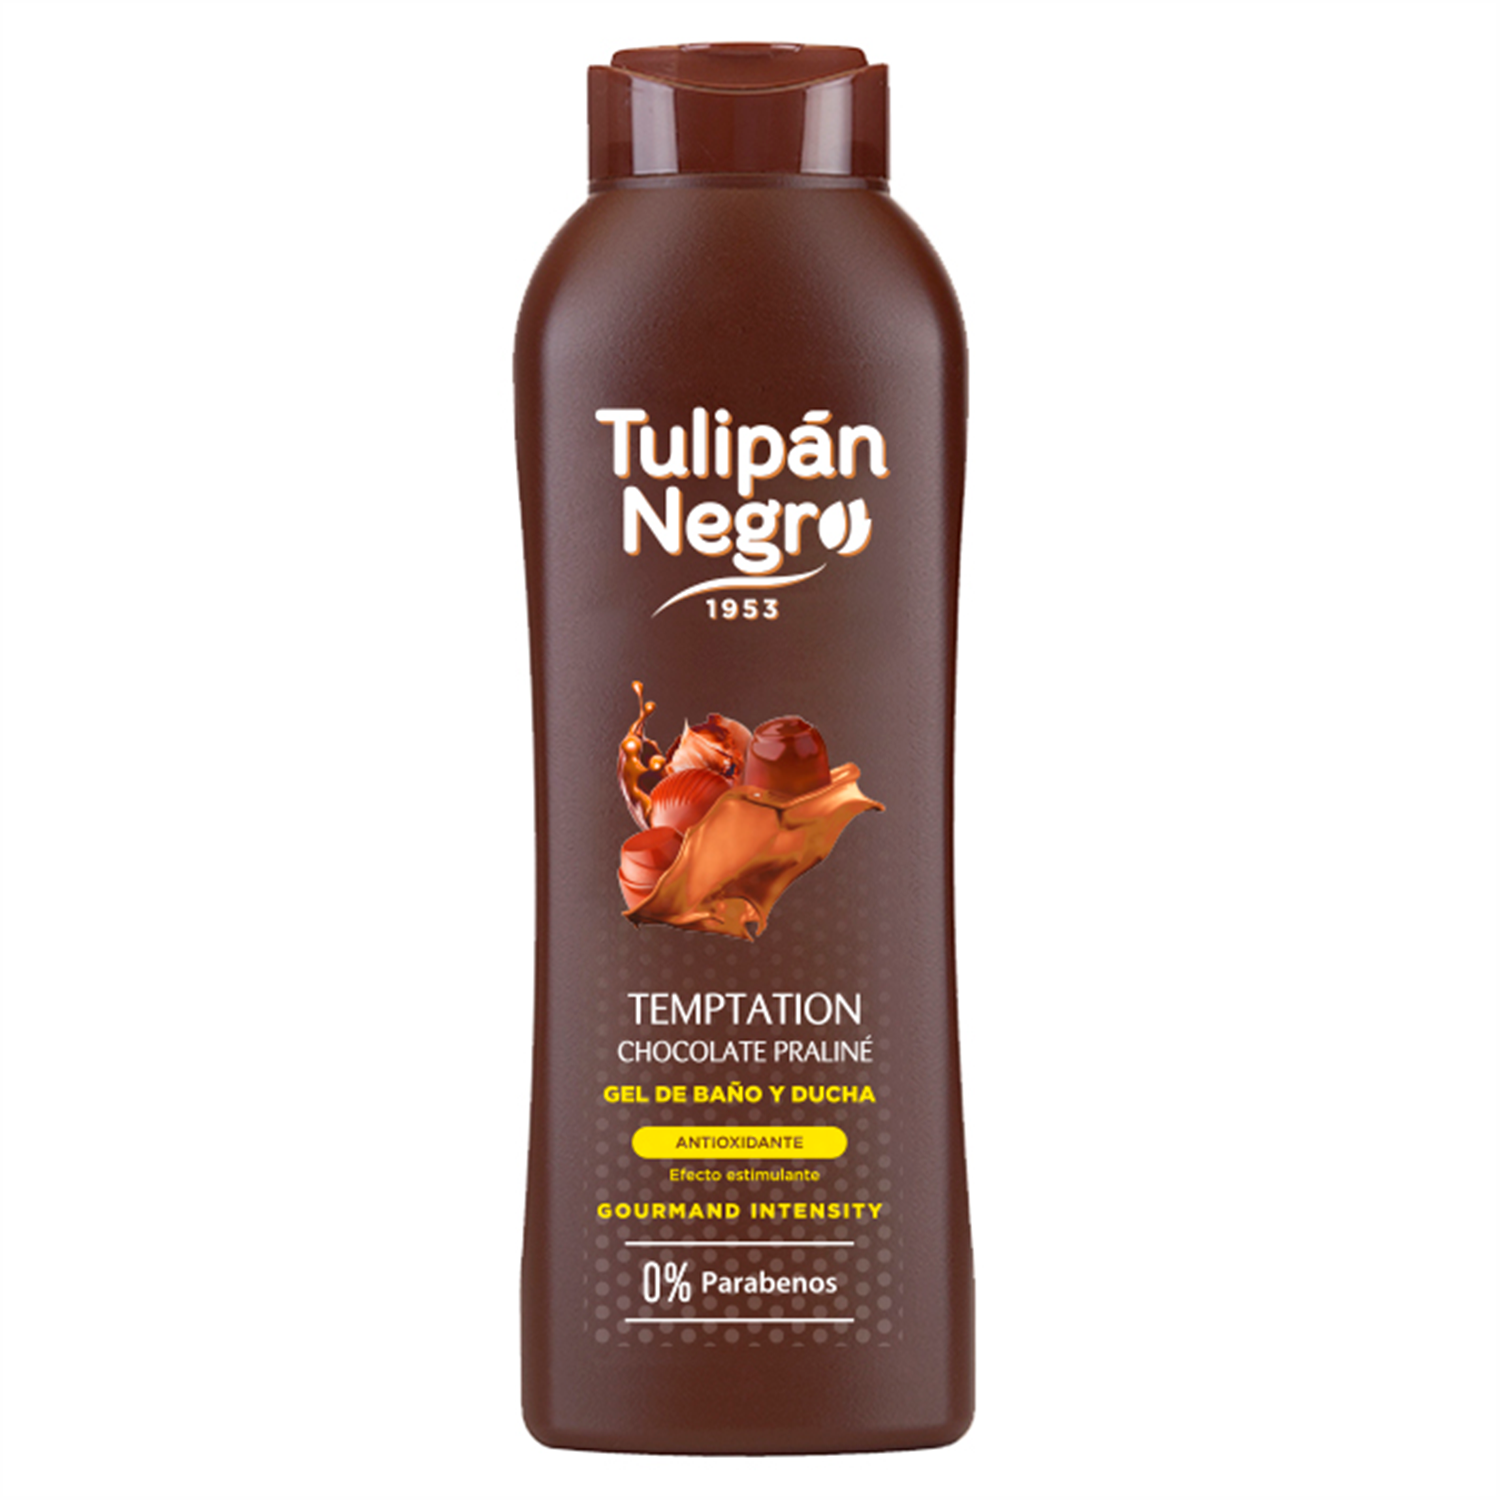 Гель-пена для душа Tulipan Negro без парабенов шоколадное пралине 720 мл - фото 1